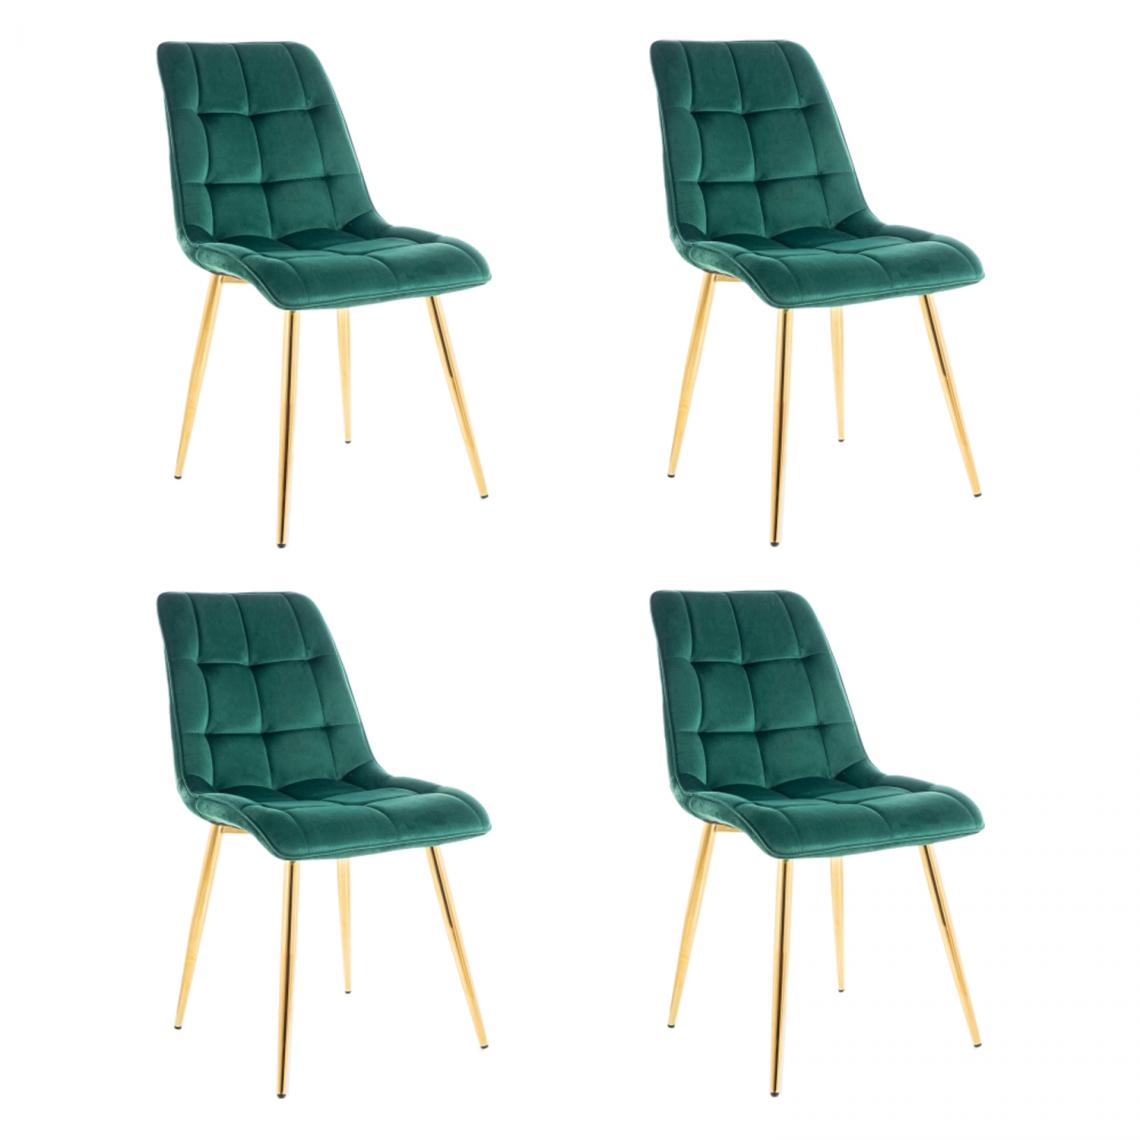 Hucoco - MASI - Lot de 4 chaises matelassées pour salon - 89x51x44 cm - Tissu velouté - Dossier matelassé - Vert - Chaises